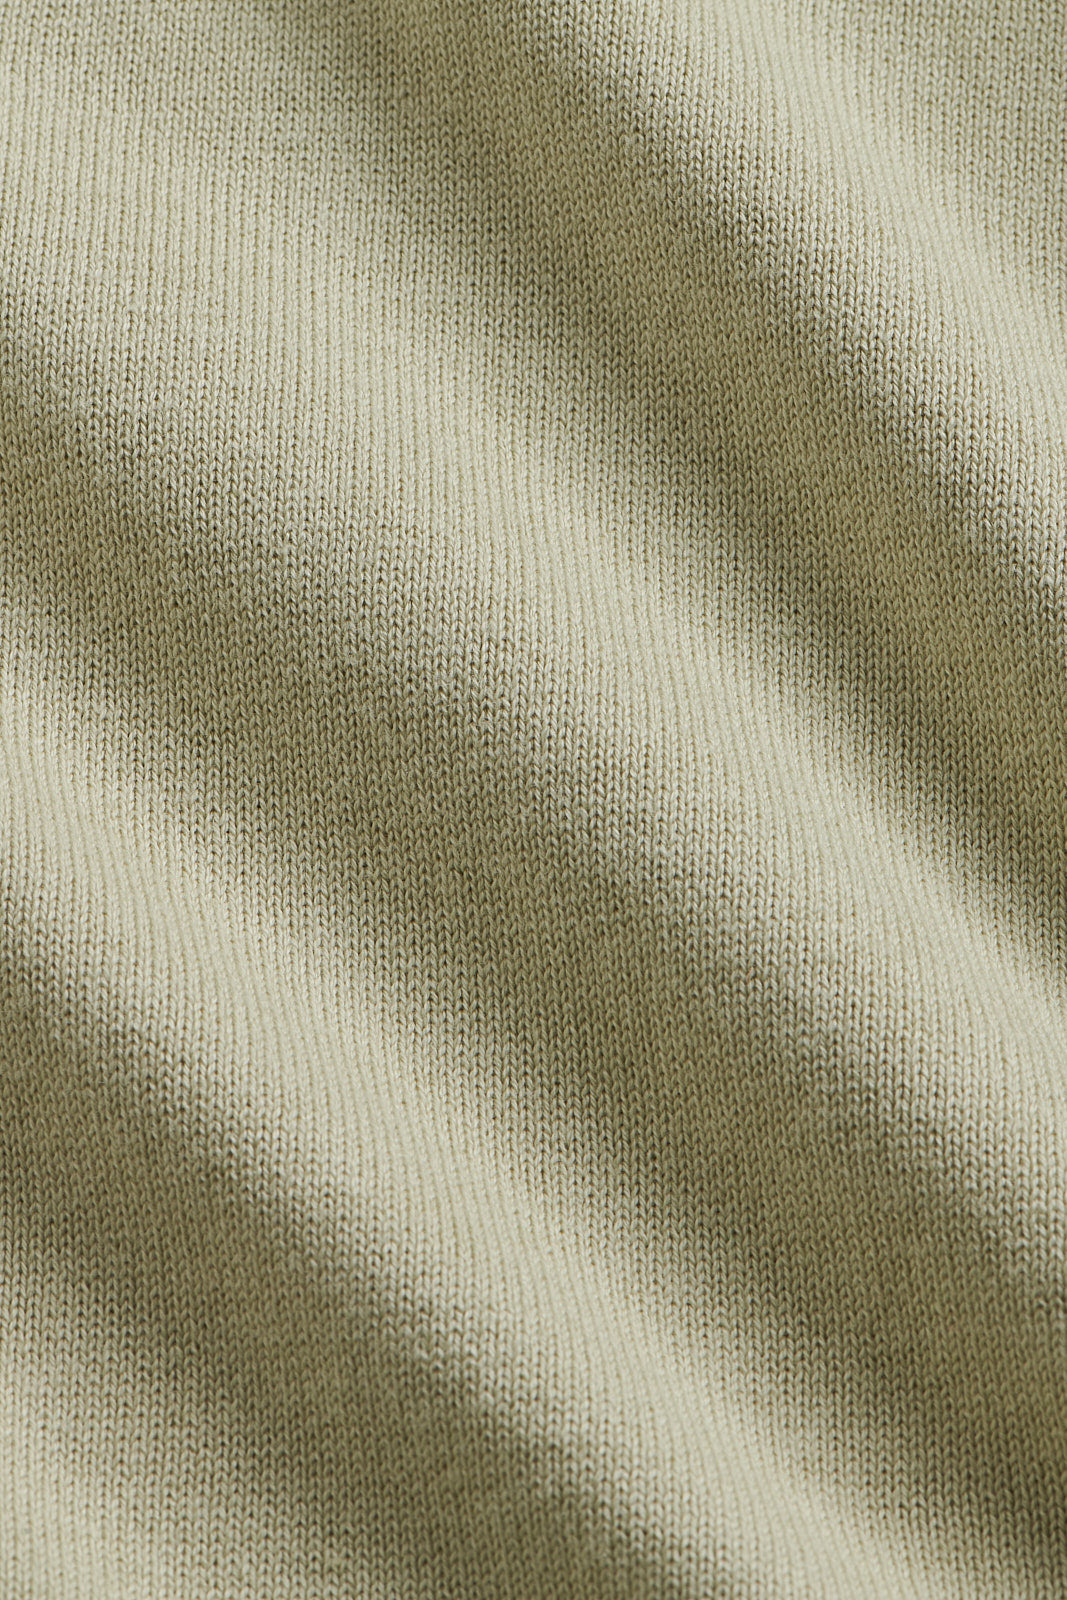 Knitted Short Sleeve V-Neck Polo in Alfalfa